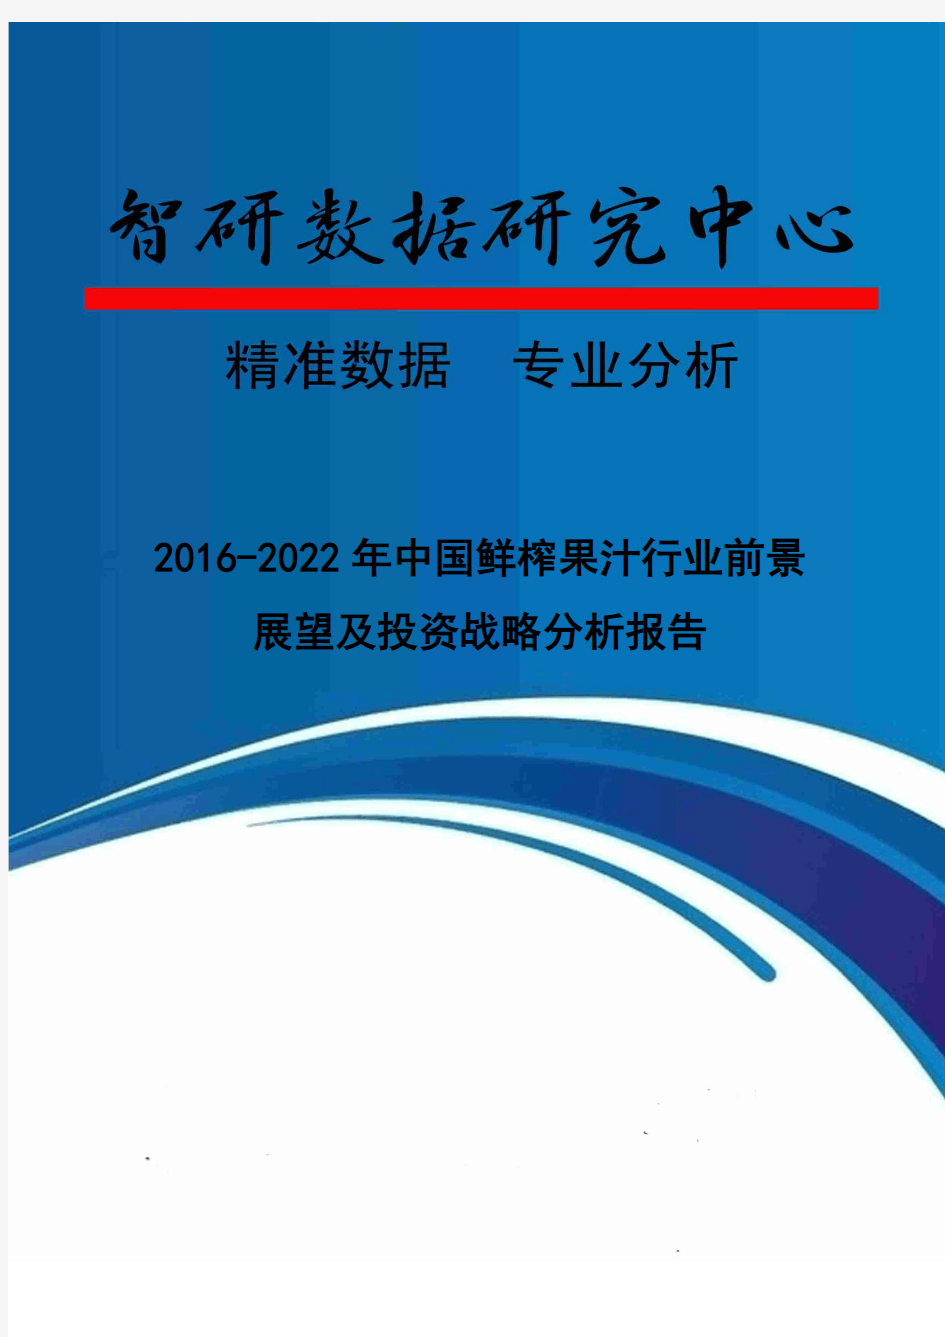 2016-2022年中国鲜榨果汁行业前景展望及投资战略分析报告